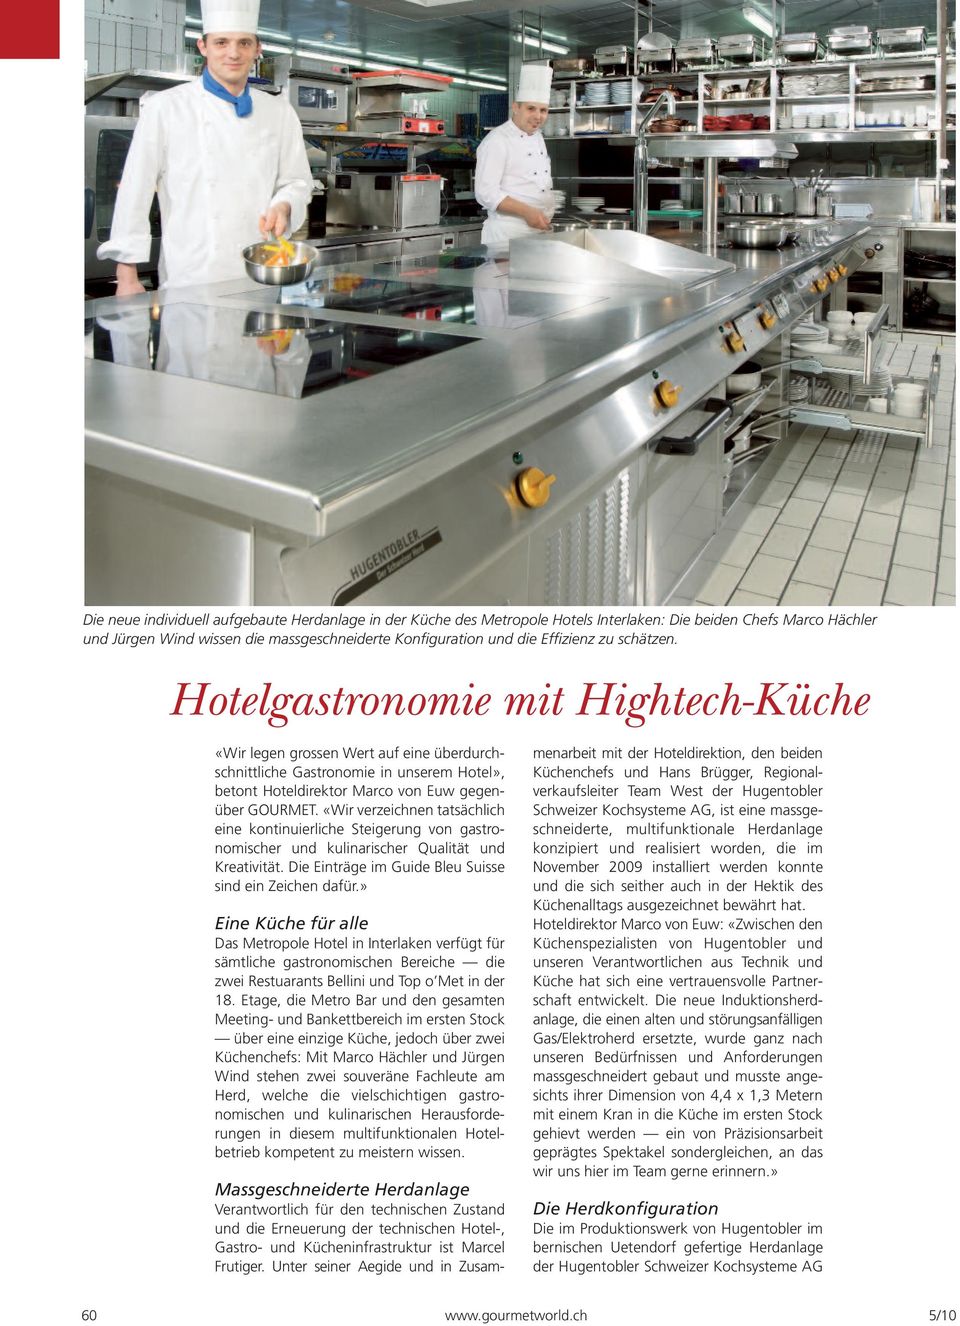 «Wir verzeichnen tatsächlich eine kontinuierliche Steigerung von gastronomischer und kulinarischer Qualität und Kreativität. Die Einträge im Guide Bleu Suisse sind ein Zeichen dafür.